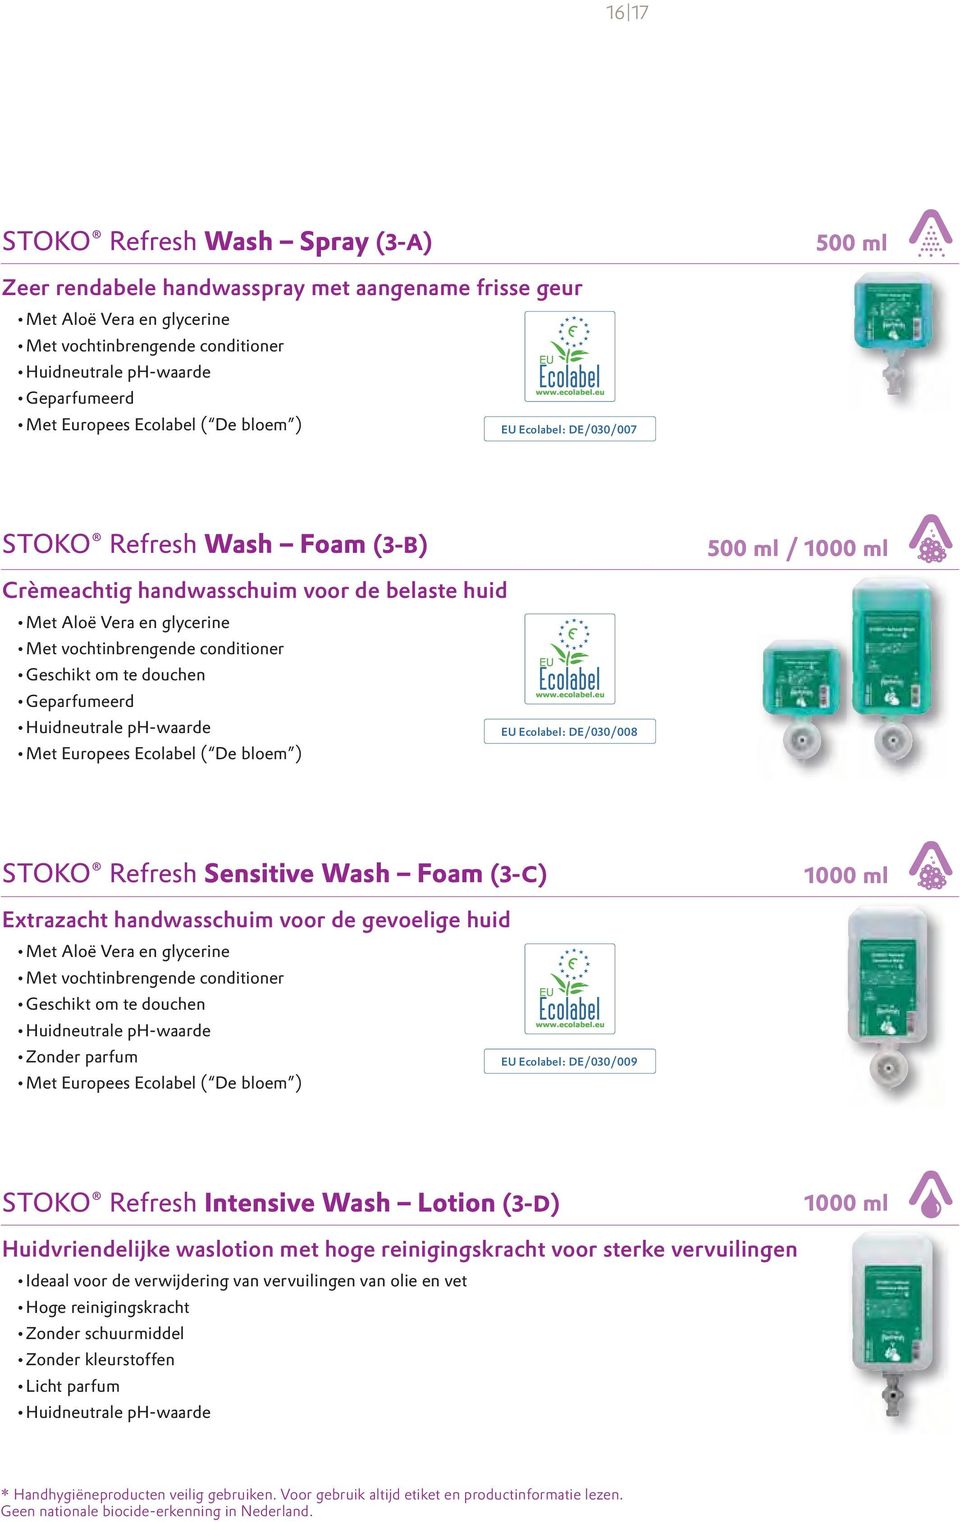 conditioner Geschikt om te douchen Geparfumeerd Huidneutrale ph-waarde Met Europees Ecolabel ( De bloem ) EU Ecolabel: DE/030/008 STOKO Refresh Sensitive Wash Foam (3-C) 1000 ml Extrazacht